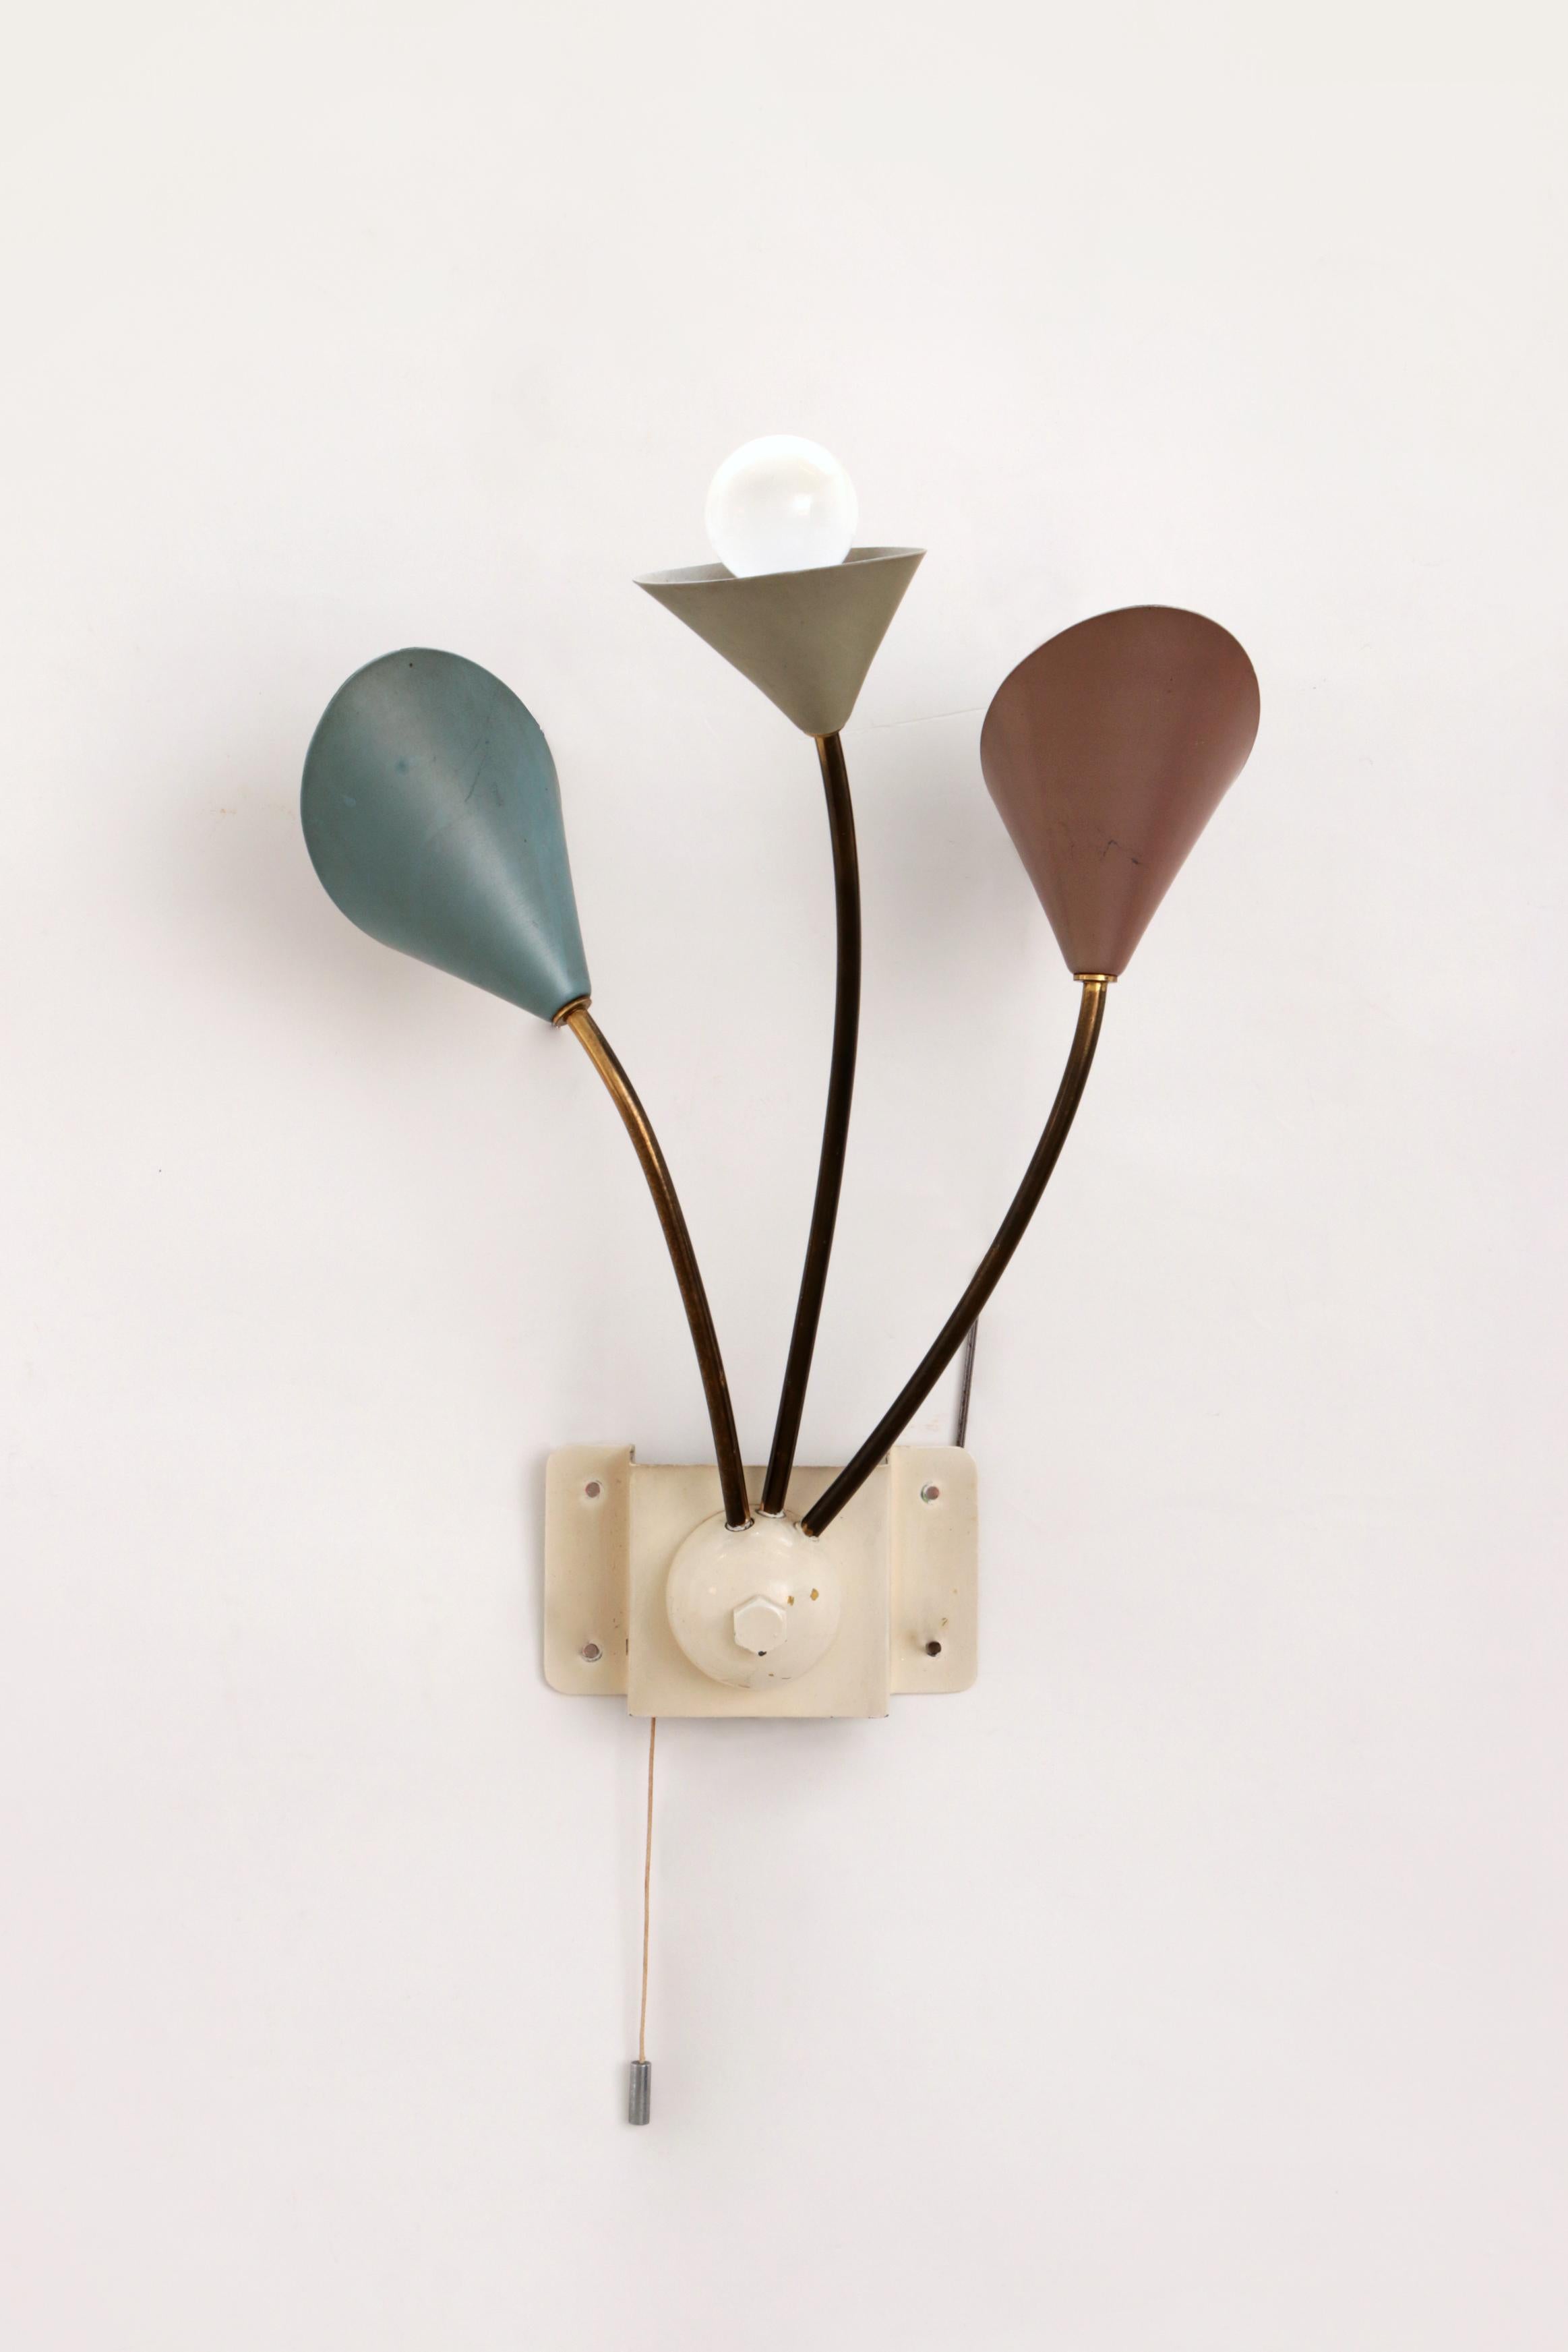 Vintage Wandlampe mit 3 Lichtern - Messing Metall, 1960 Dänemark

Entdecken Sie den Charme der 60er Jahre mit unserer Vintage-Wandleuchte, die jedem Raum eine stilvolle und warme Atmosphäre verleiht. Diese einzigartige Wandleuchte mit ihren drei